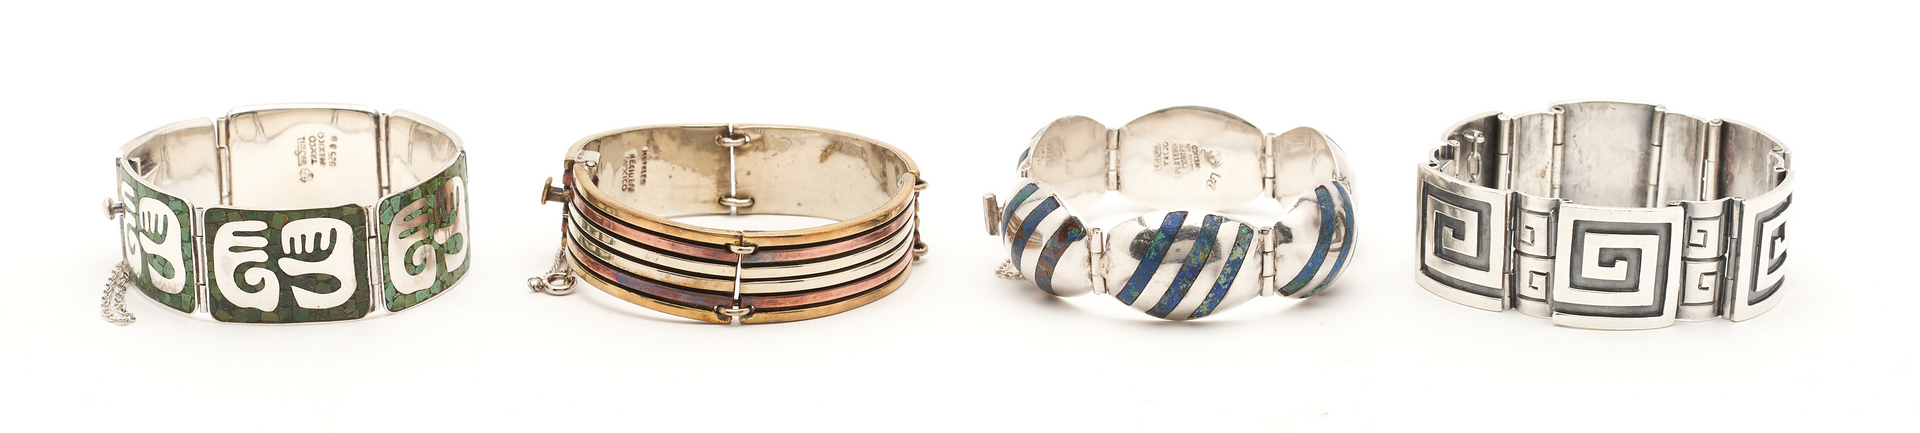 Lot 840: 4 Mexican Sterling Silver Bracelets, incl. Enrique Ledesma